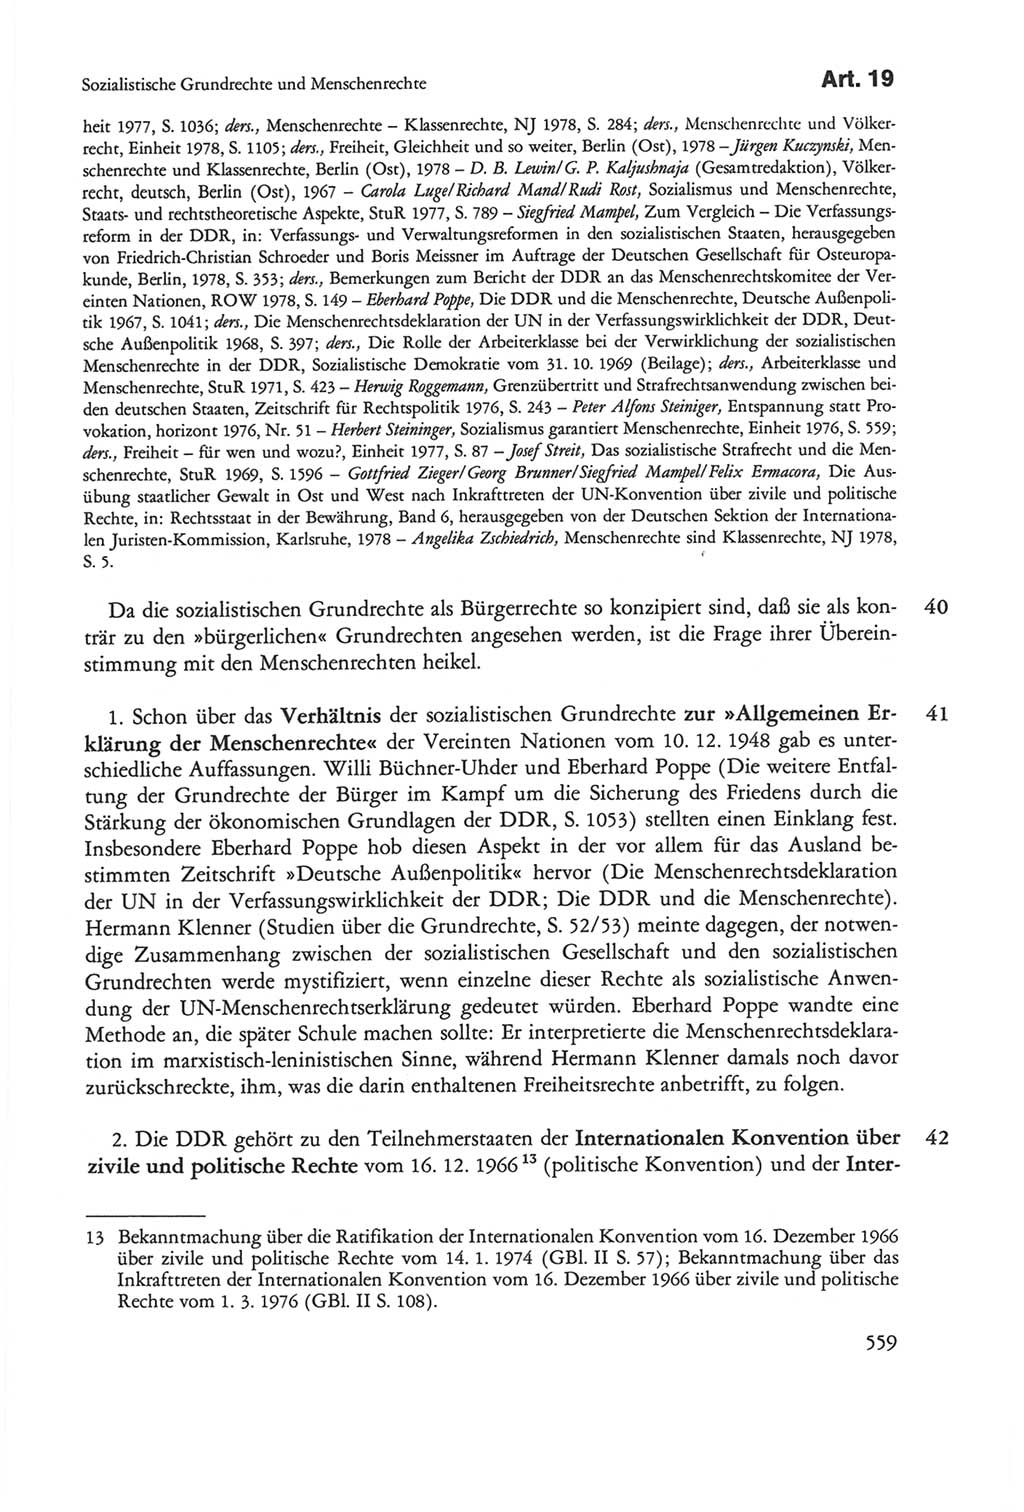 Die sozialistische Verfassung der Deutschen Demokratischen Republik (DDR), Kommentar 1982, Seite 559 (Soz. Verf. DDR Komm. 1982, S. 559)